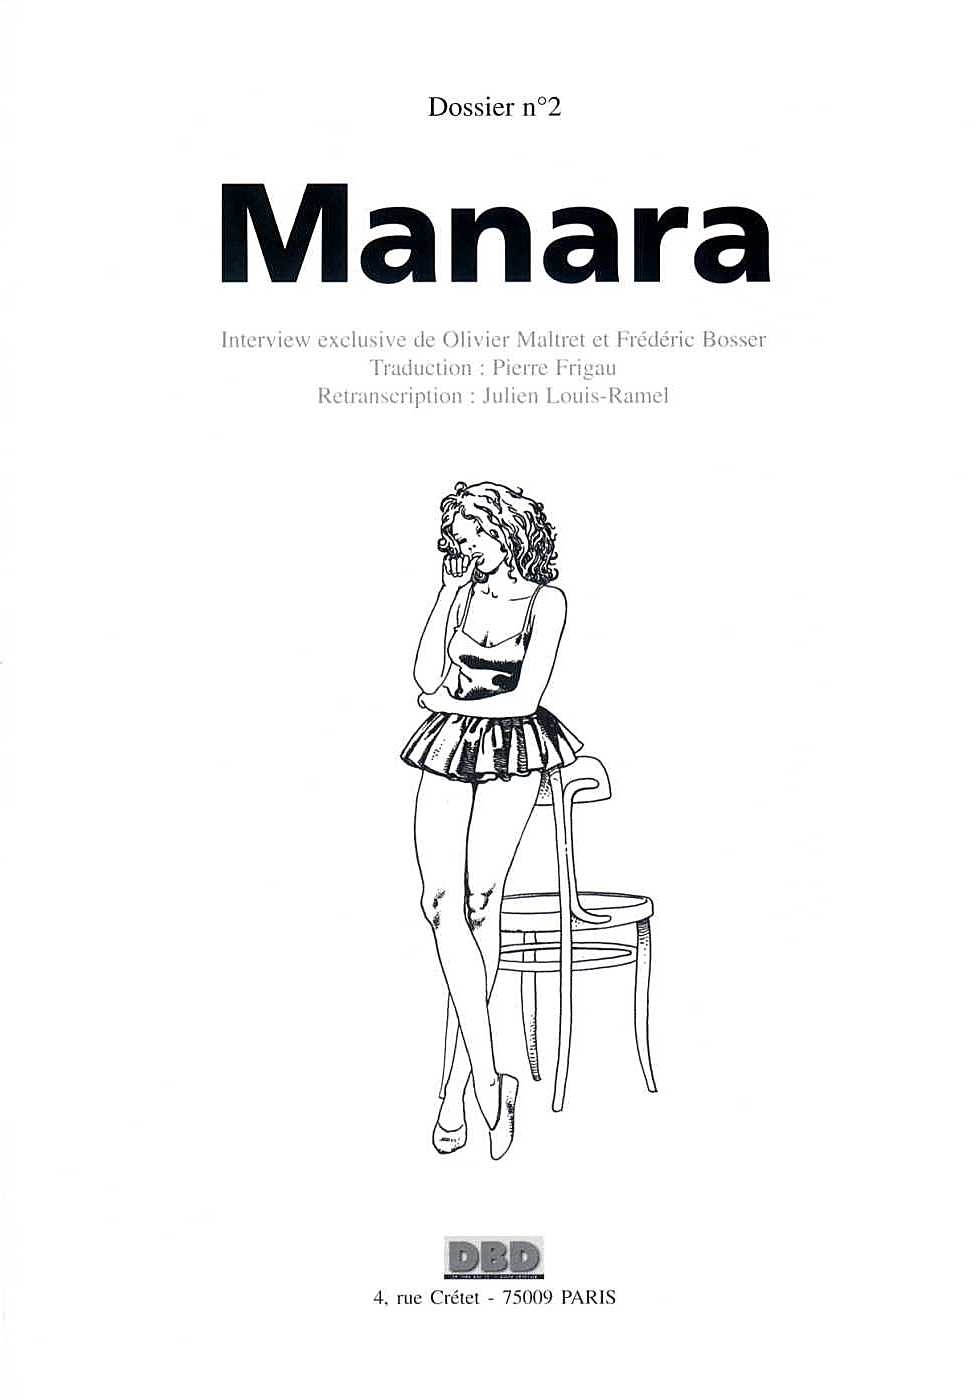 Dossier Manara N°2 [French] 2